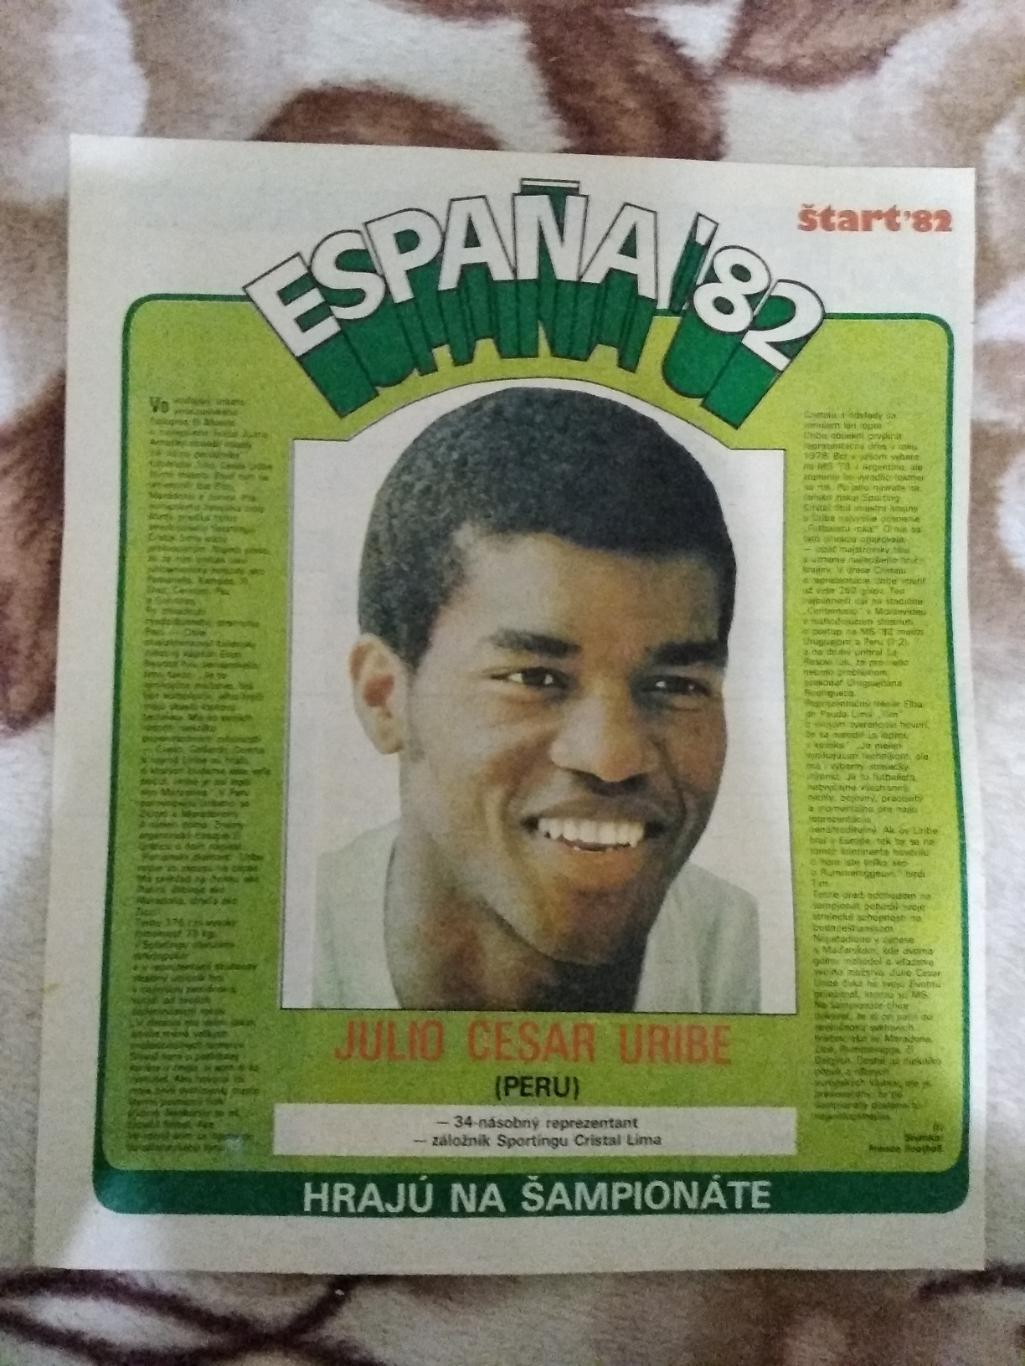 Постер.Футбол.Урибе (Перу).Старт 1982 г.